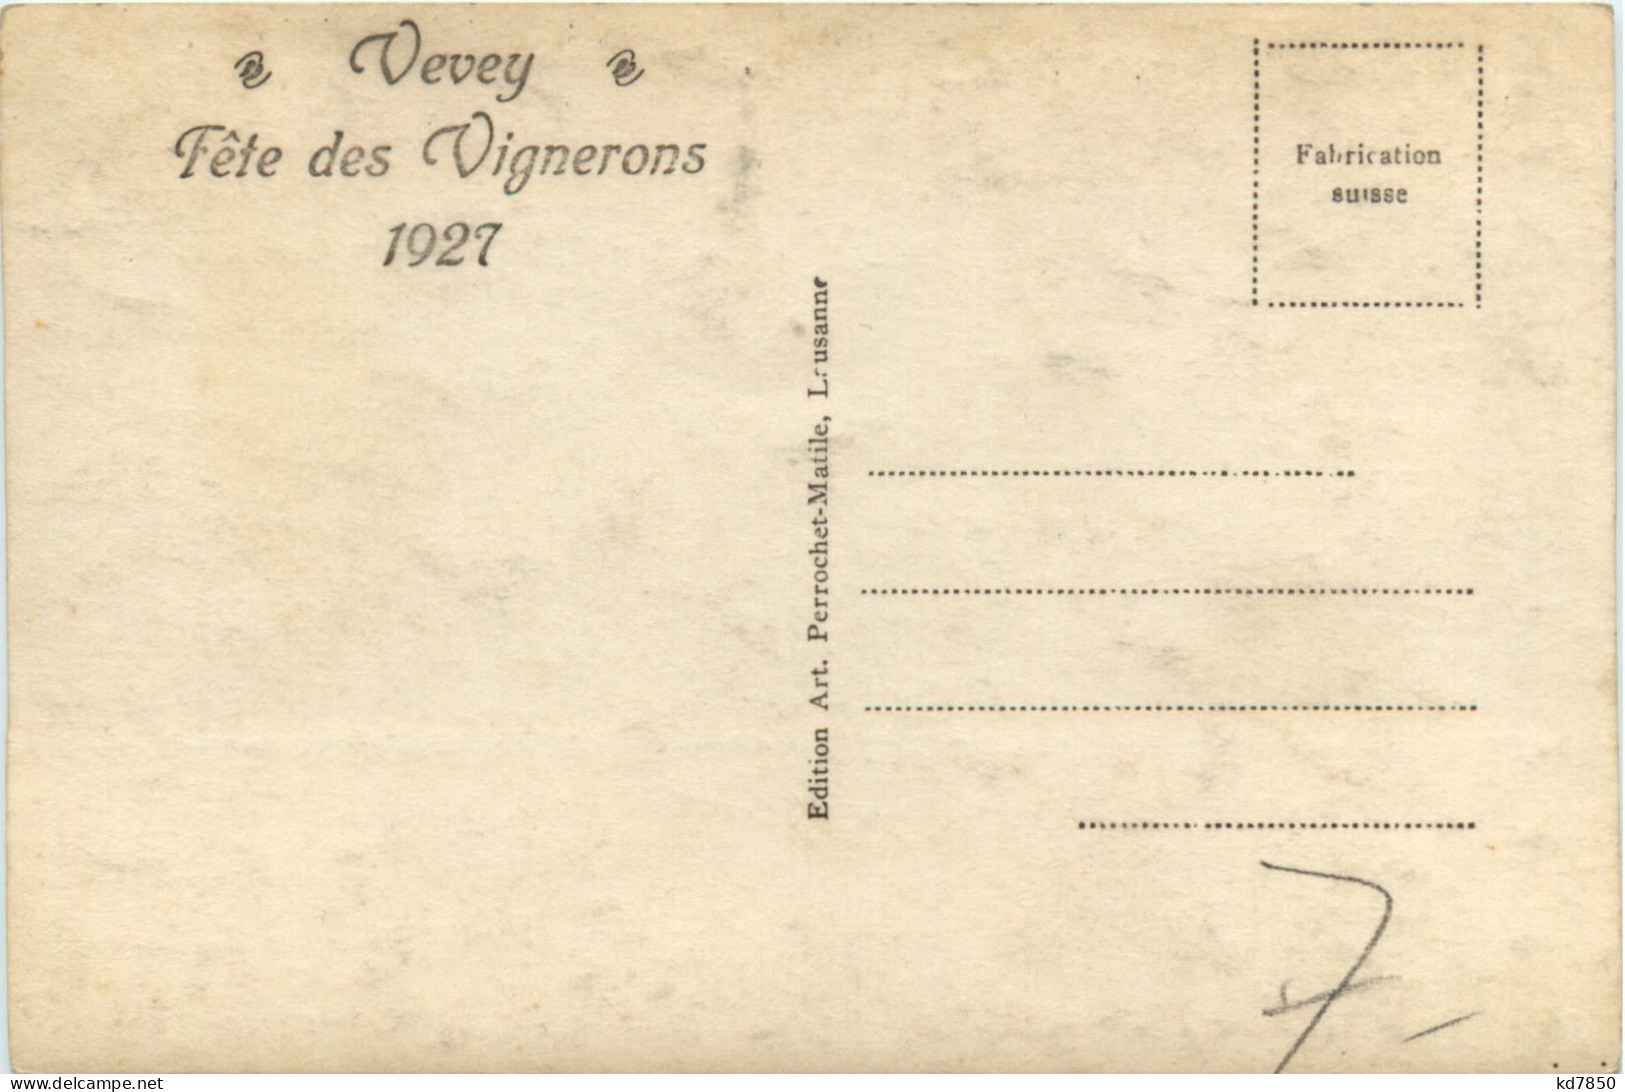 Vevey - Fete Des Vignerons 1927 - Vevey